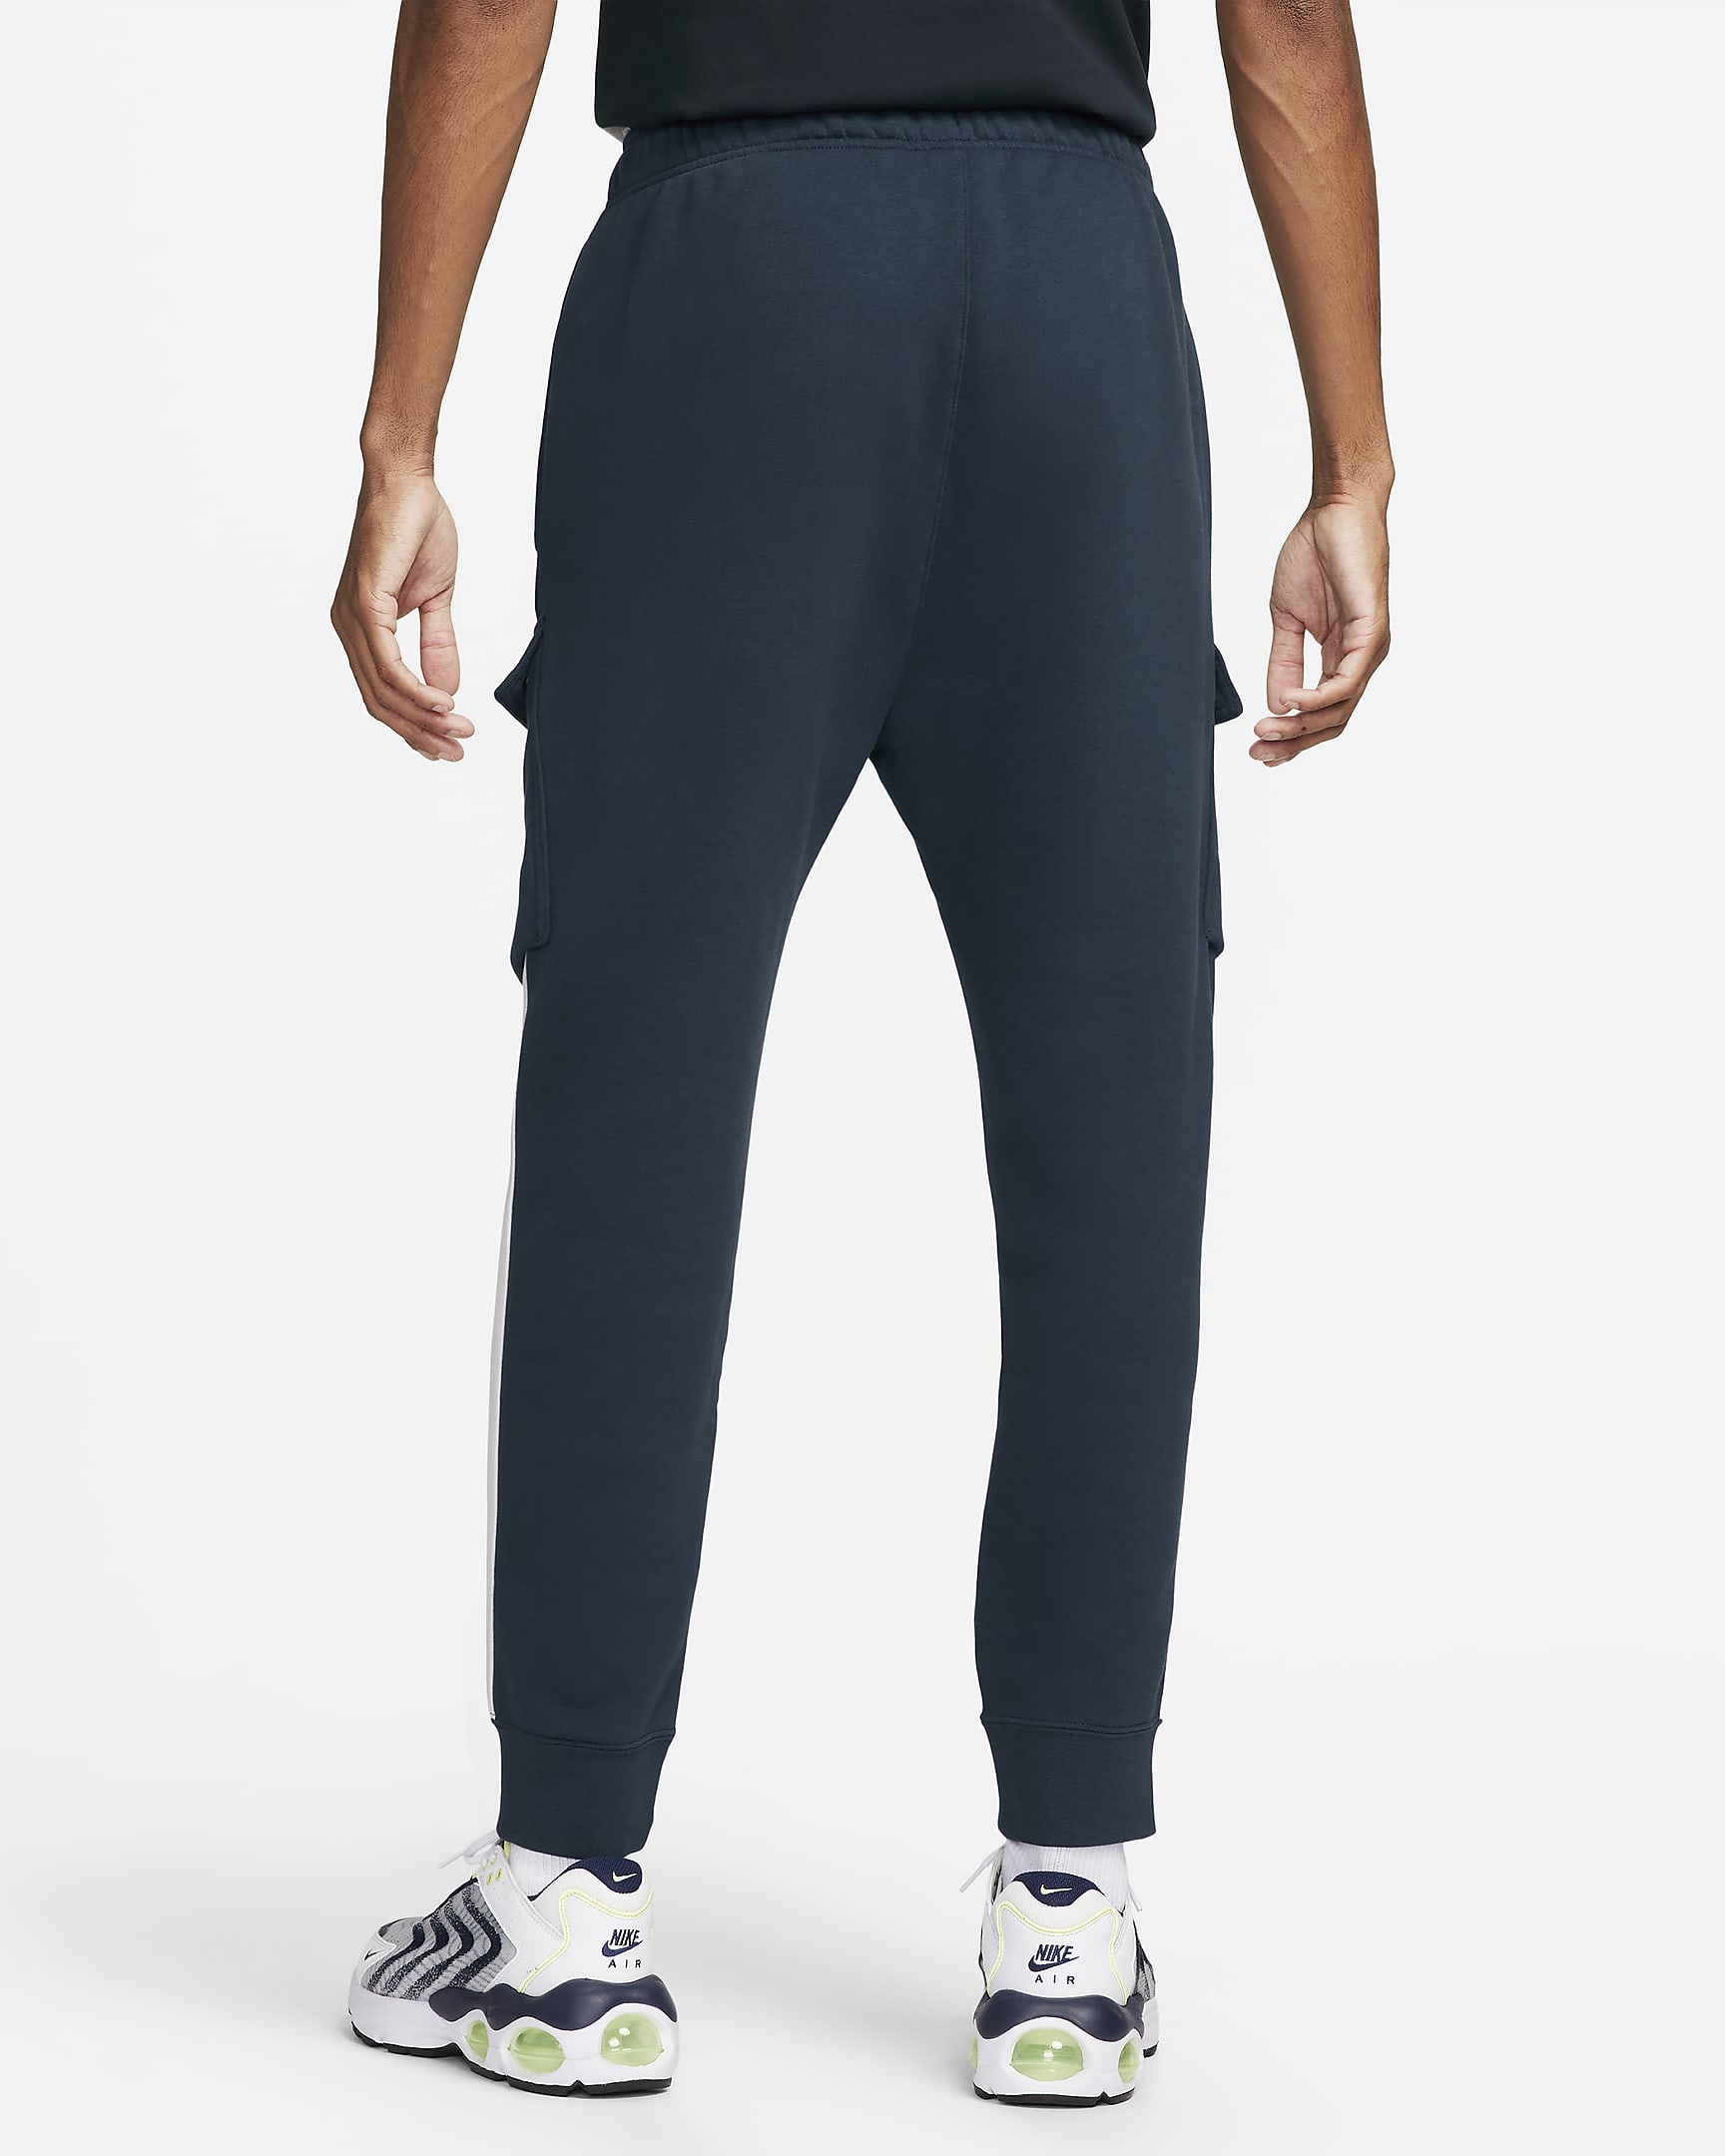 Pants cargo de tejido Fleece para hombre Nike Air. Nike.com